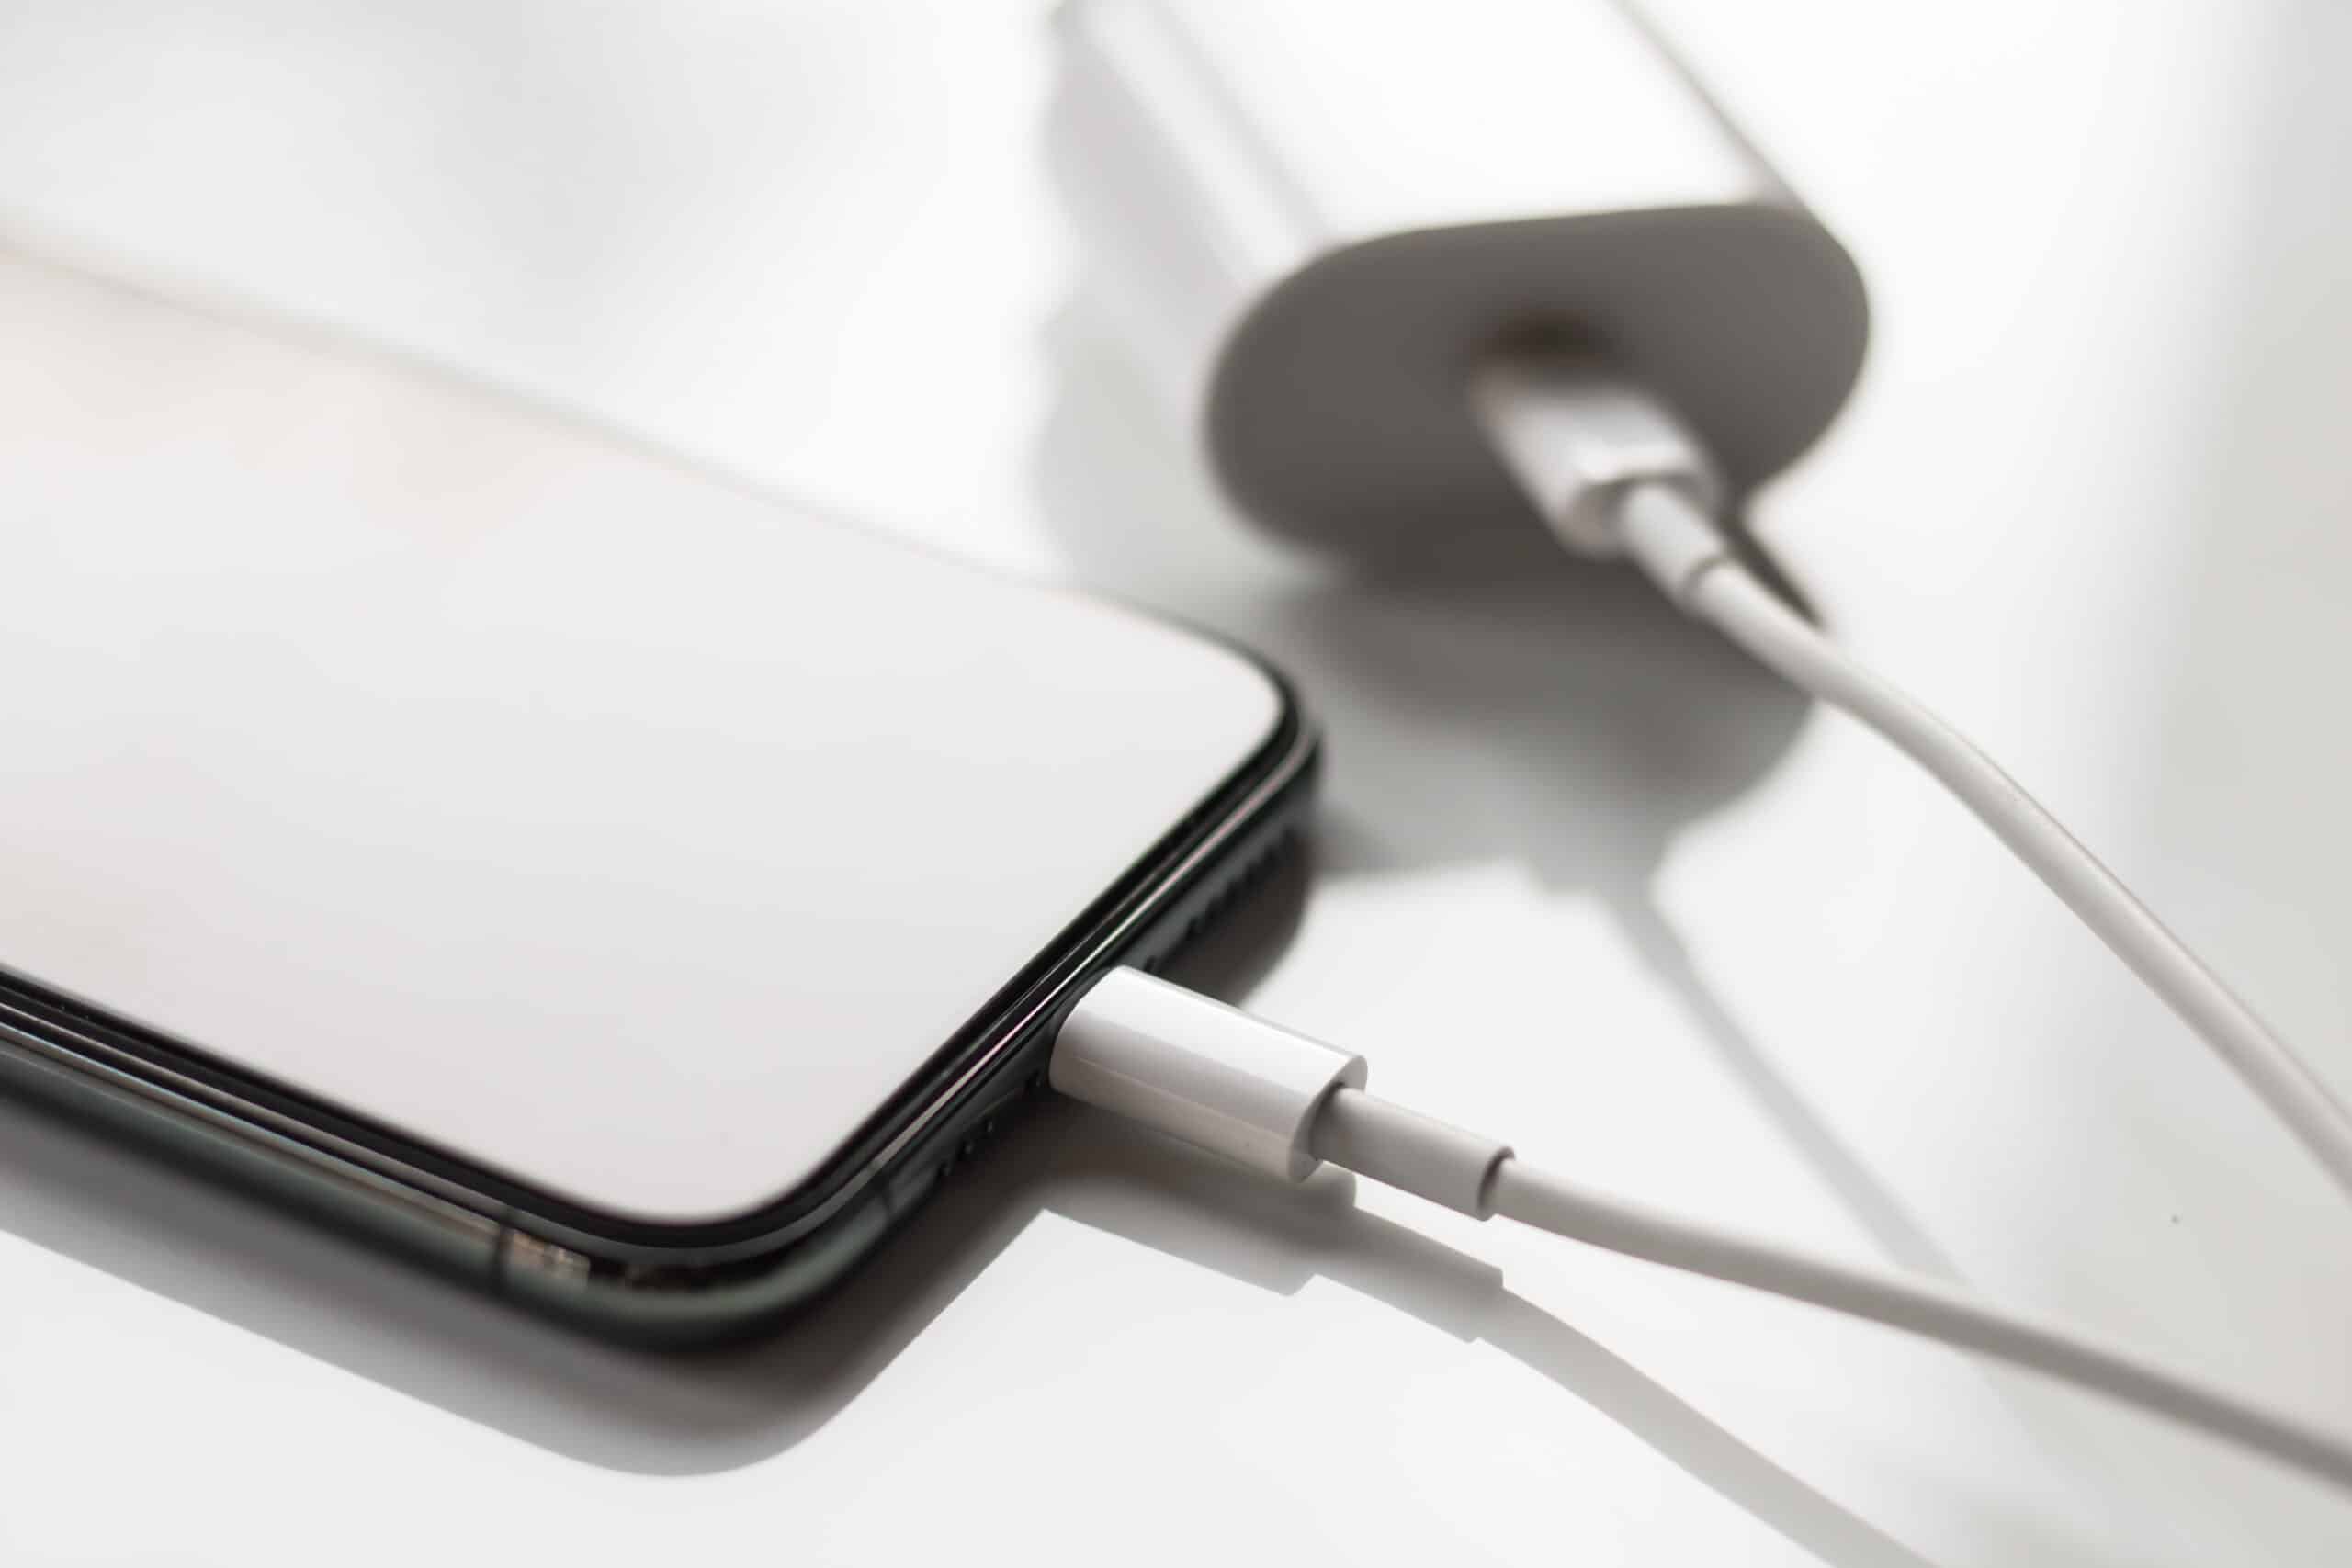 Apple é multada em R$ 100 milhões por vender iPhone sem carregador no Brasil